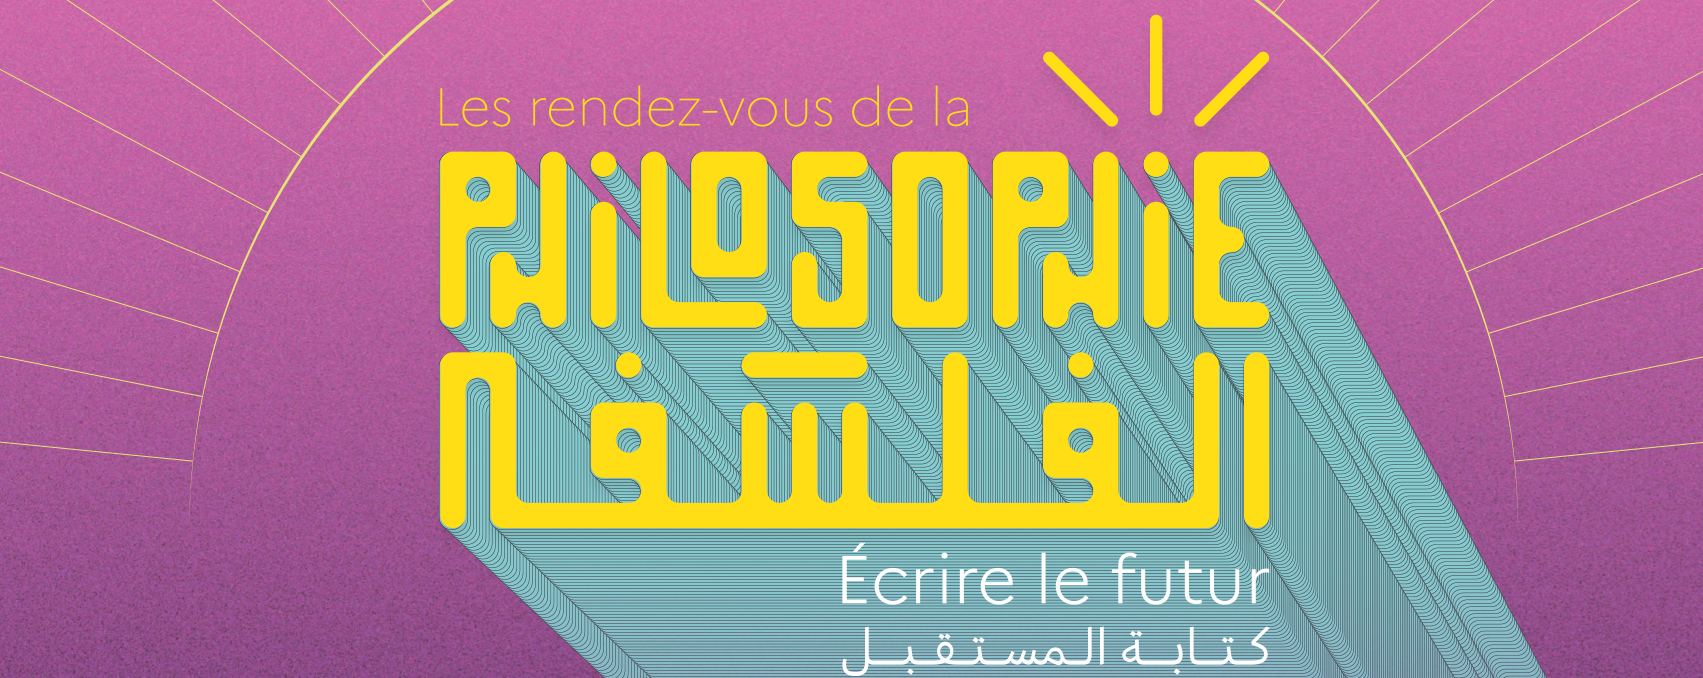 Rabat - Rendez-vous de la Philosophie : Une 9ème Édition en vue, tournée vers l'avenir